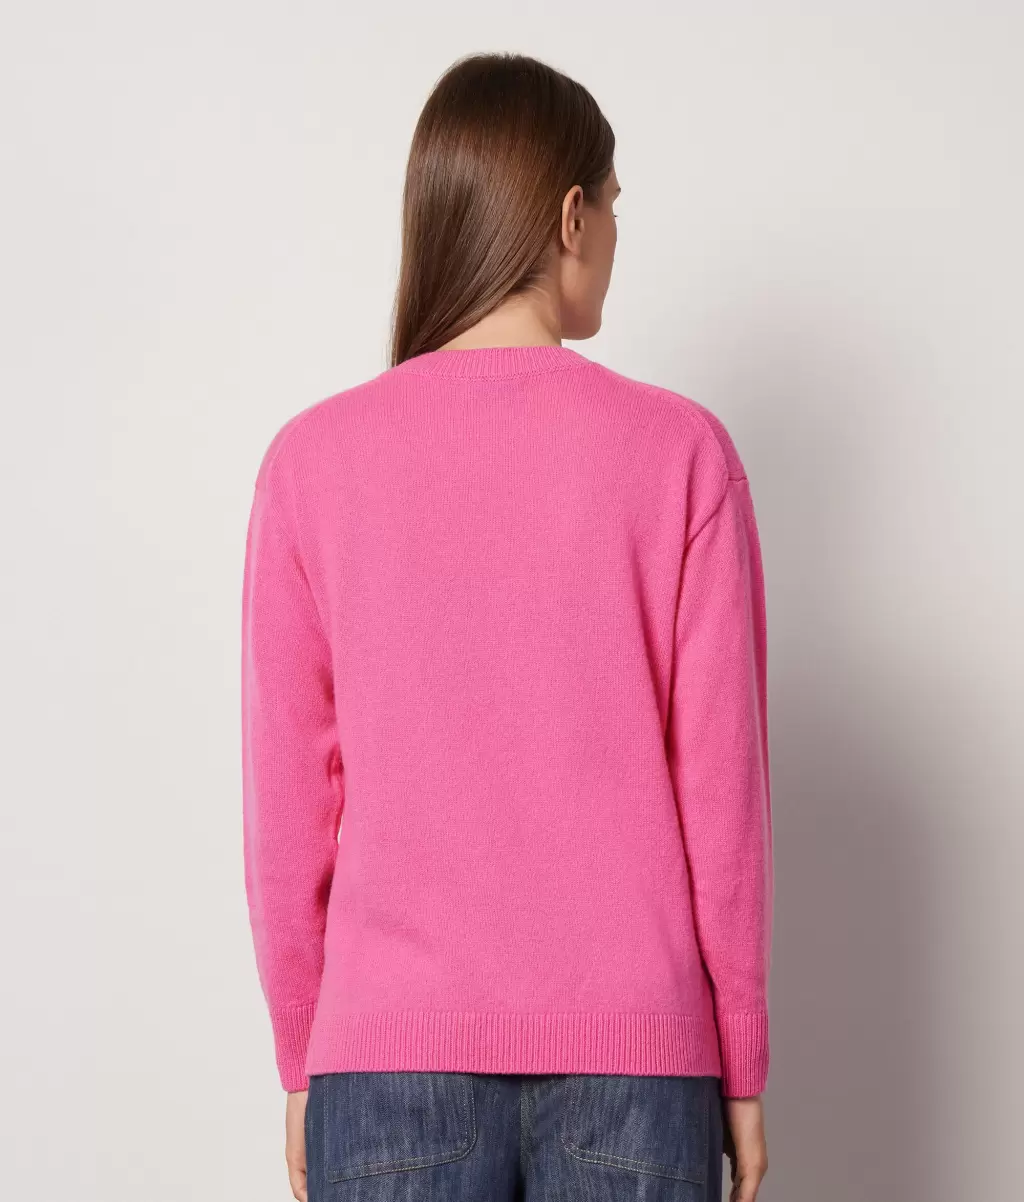 Pink Swetry Z Okrągłym Dekoltem Sweter Z Okrągłym Dekoltem Z Kaszmiru Ultrasoft Falconeri Kobieta - 2